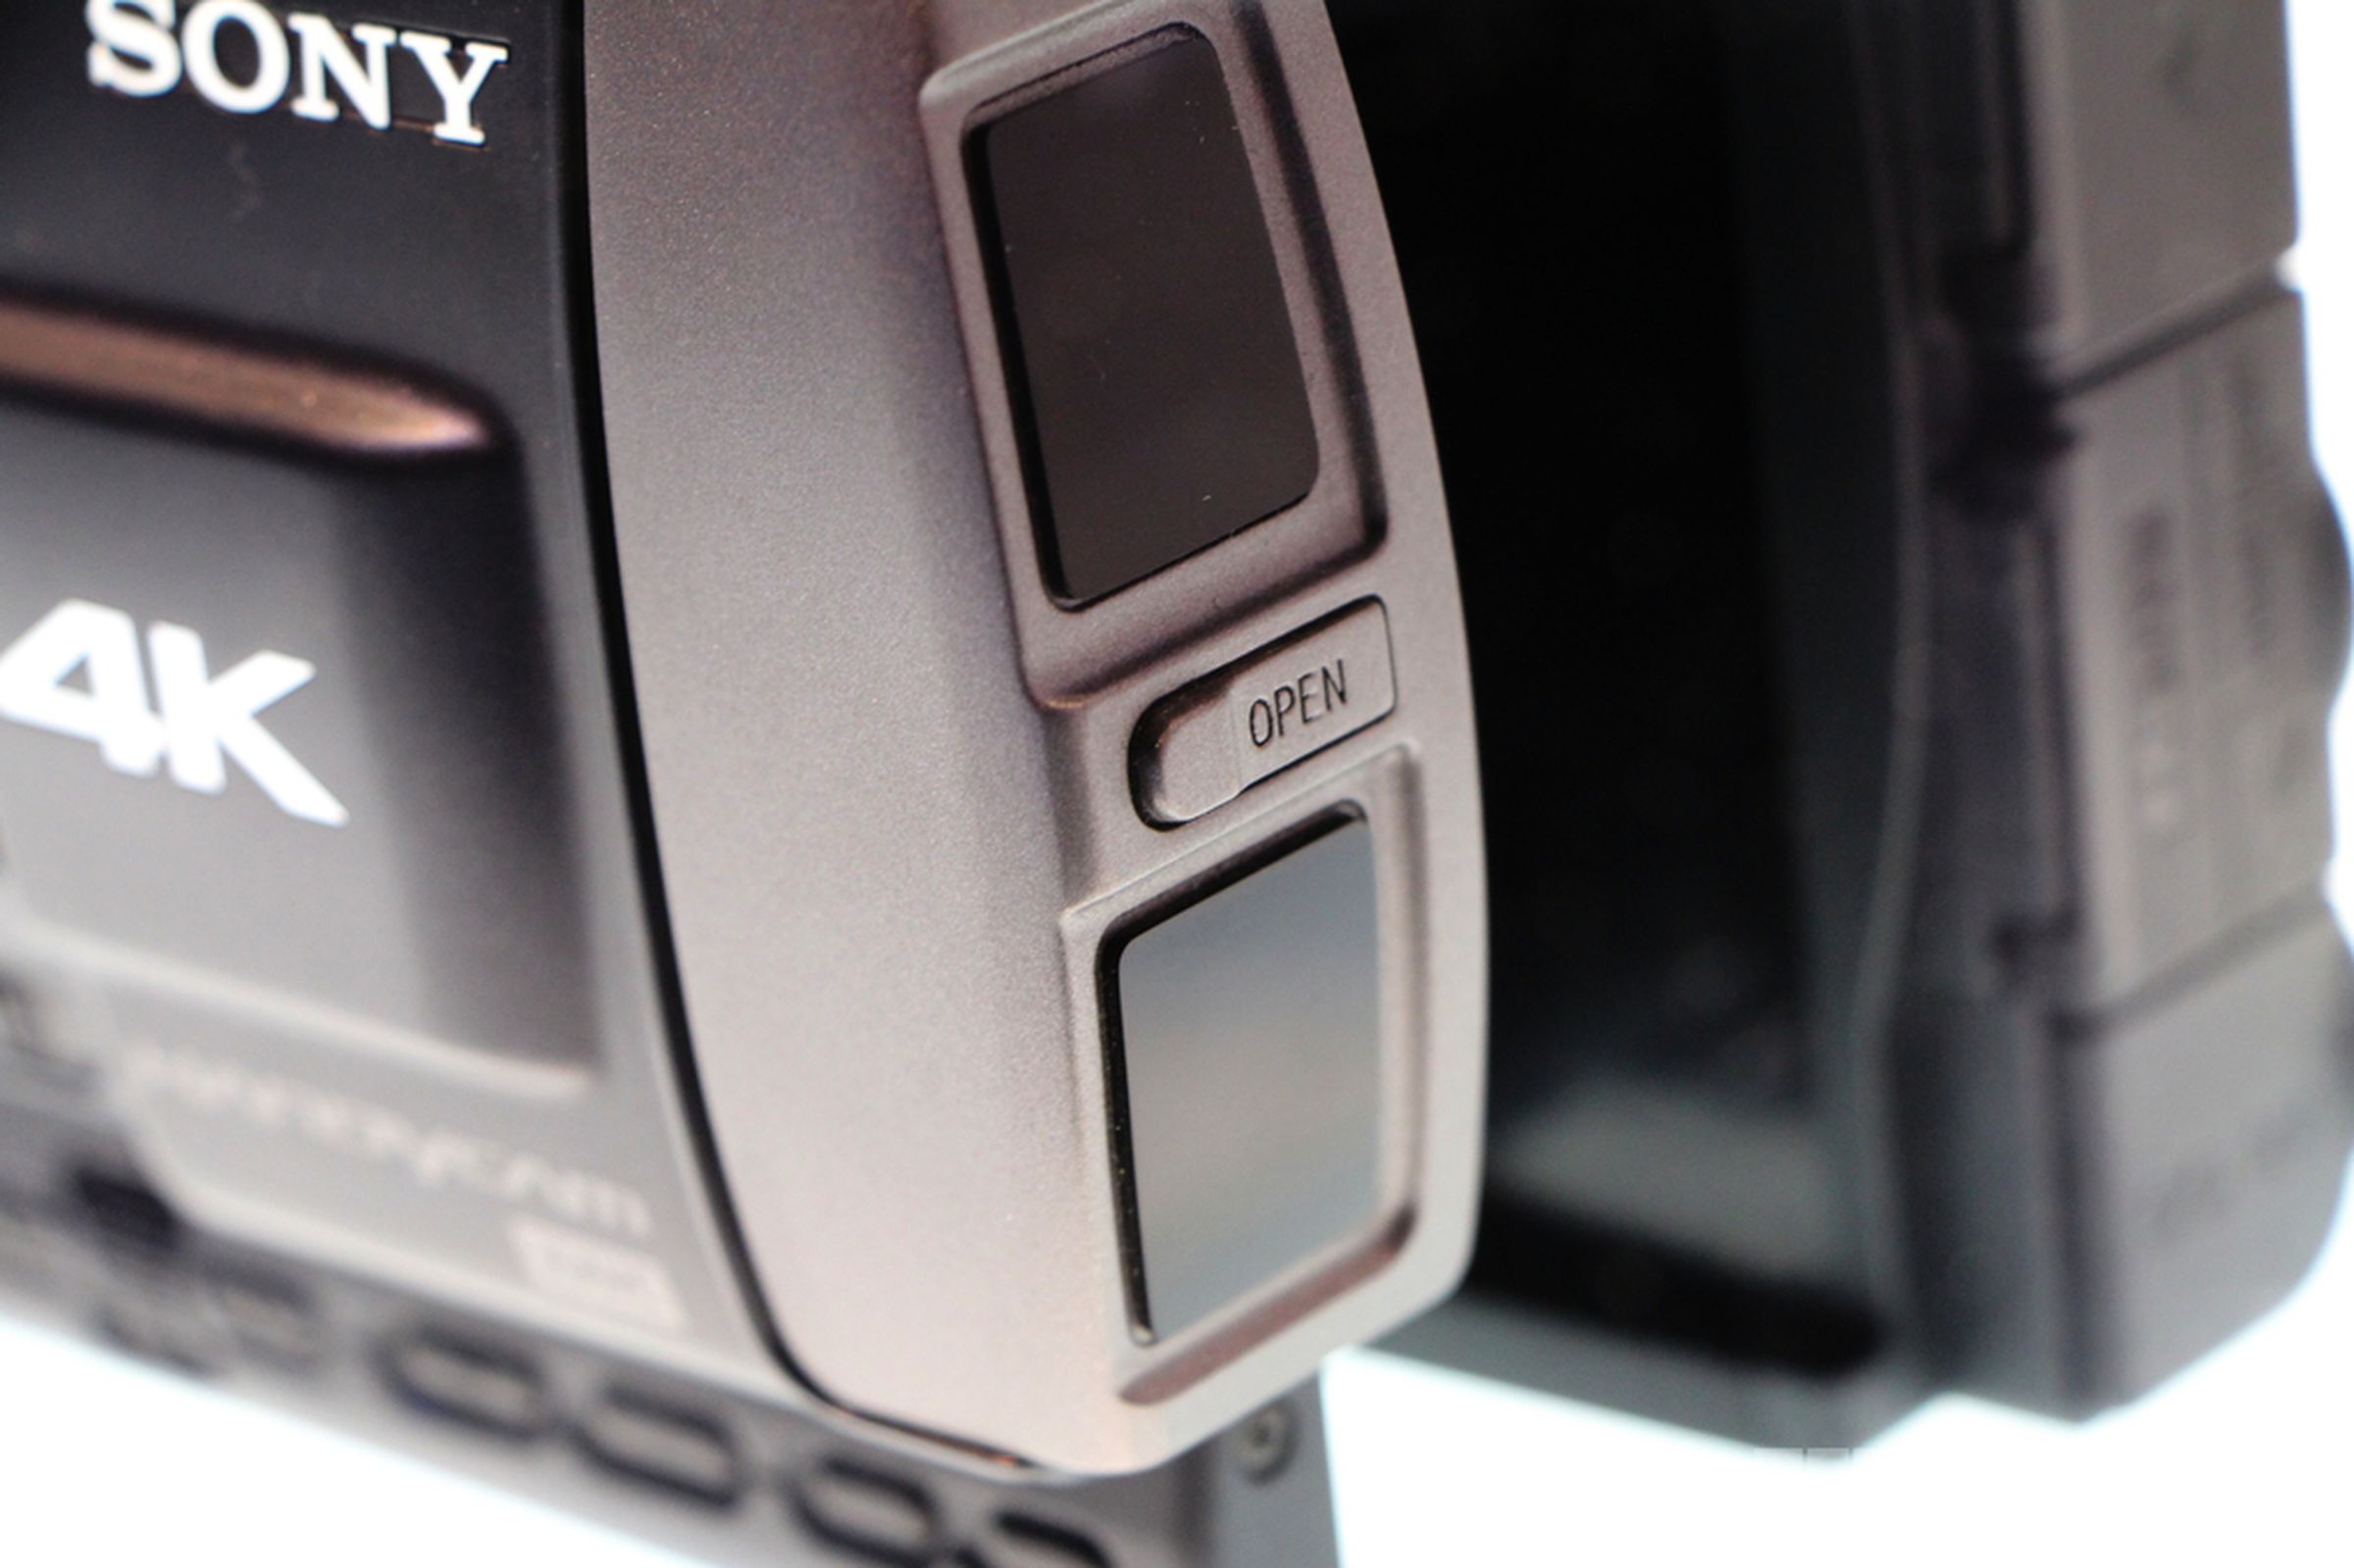 Sony's 4K Handycam prototype photos